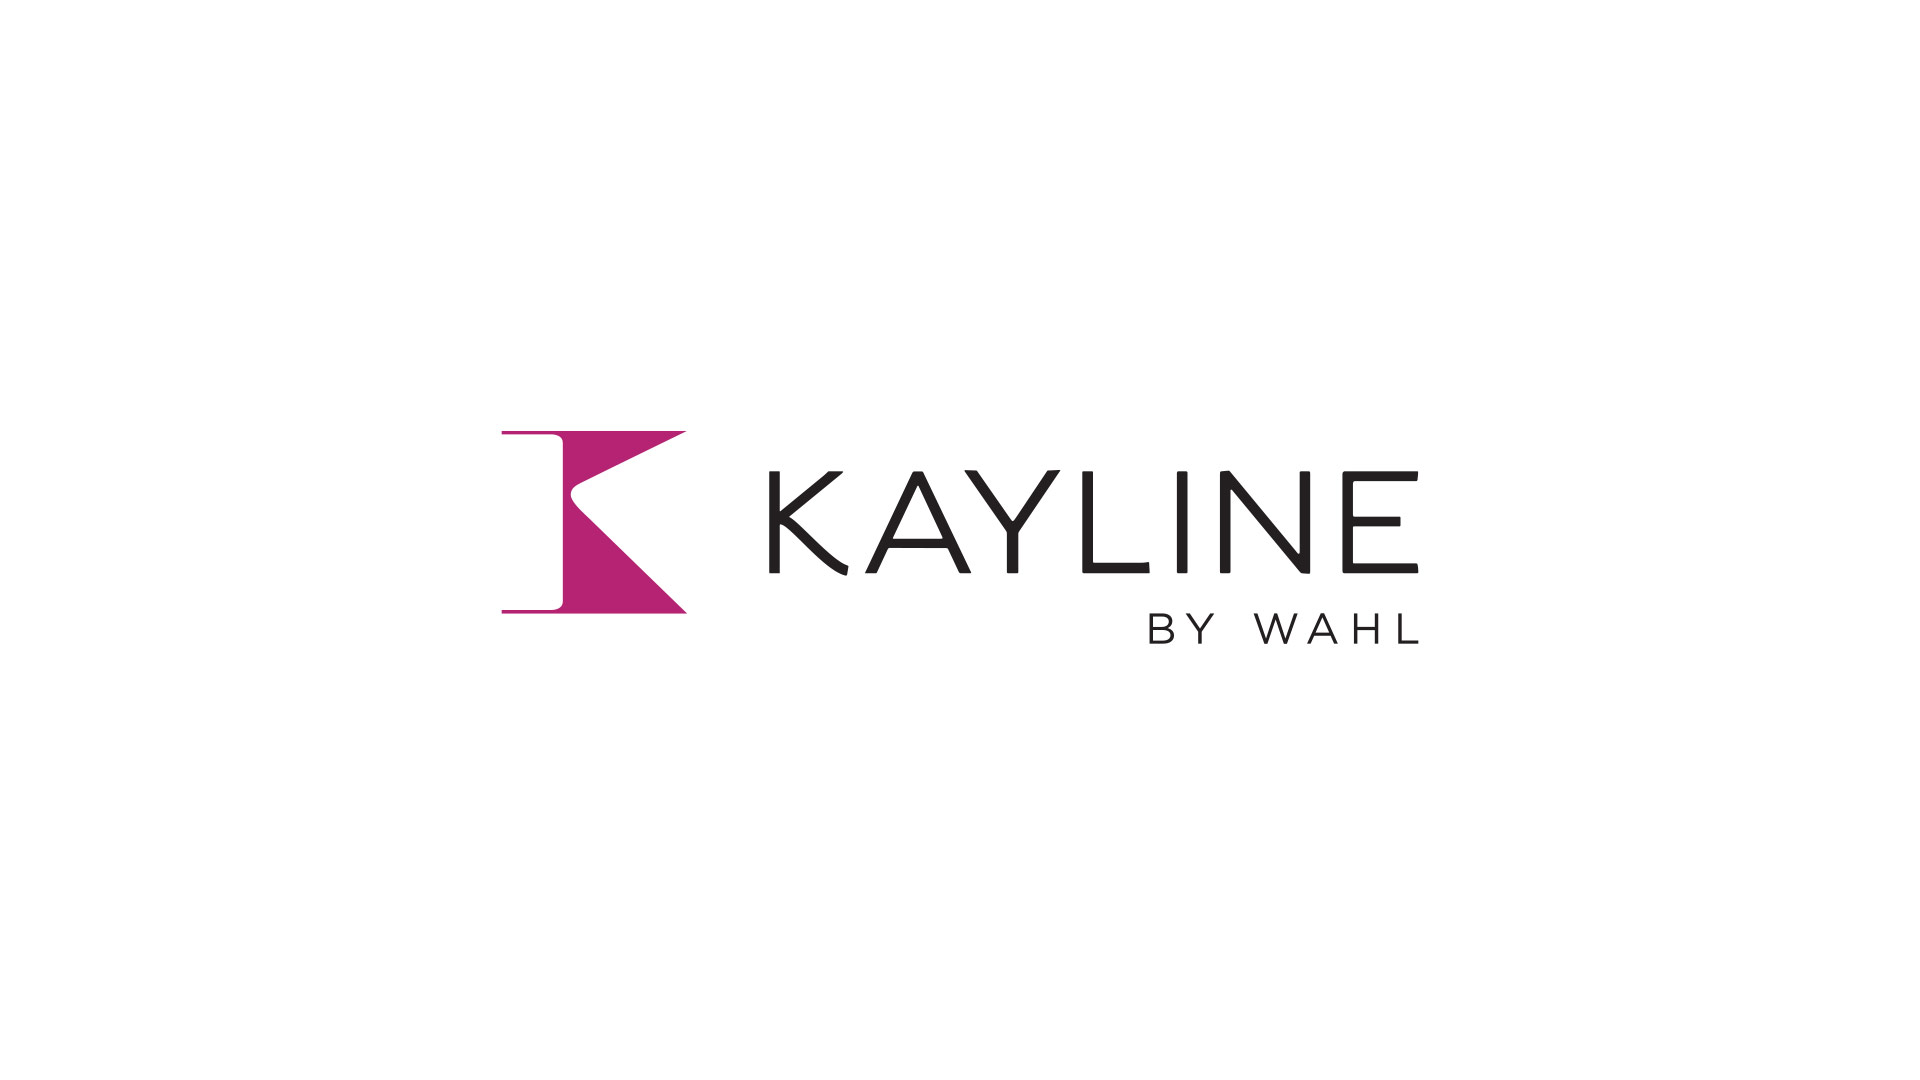 Kayline website